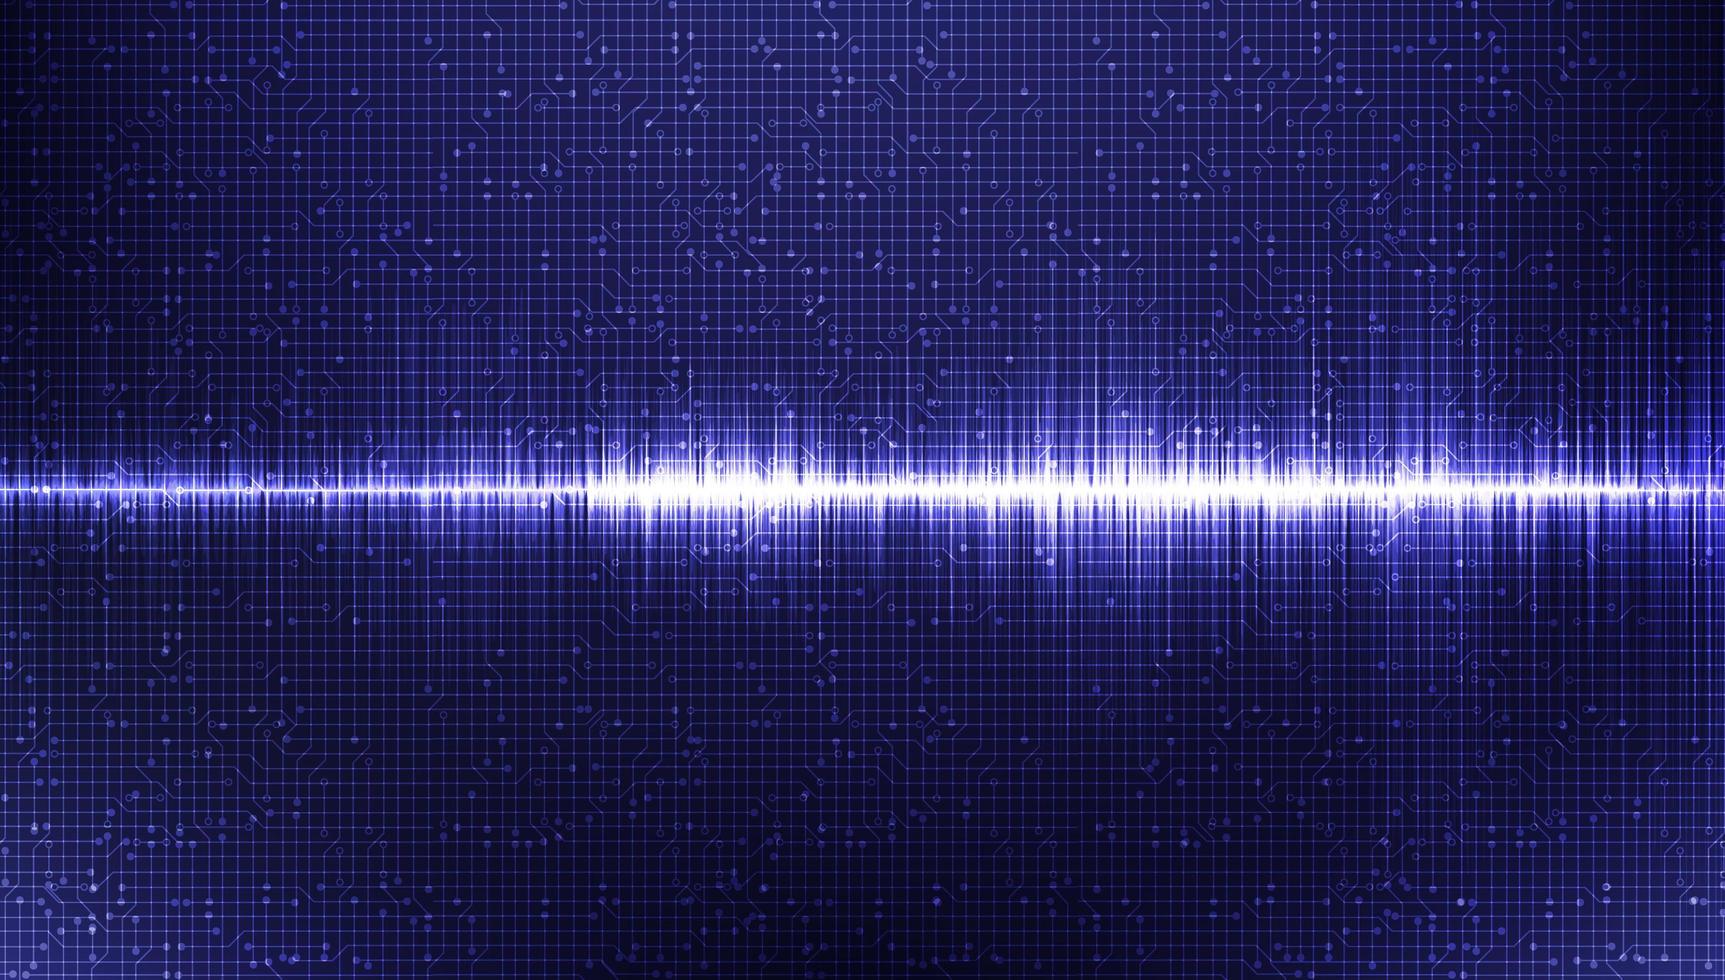 elektronische geluidsgolf laag en hoog richterschaal op blauwe achtergrond, digitaal en aardbevingsgolfdiagram concept, ontwerp voor muziekstudio en wetenschap, vectorillustratie. vector